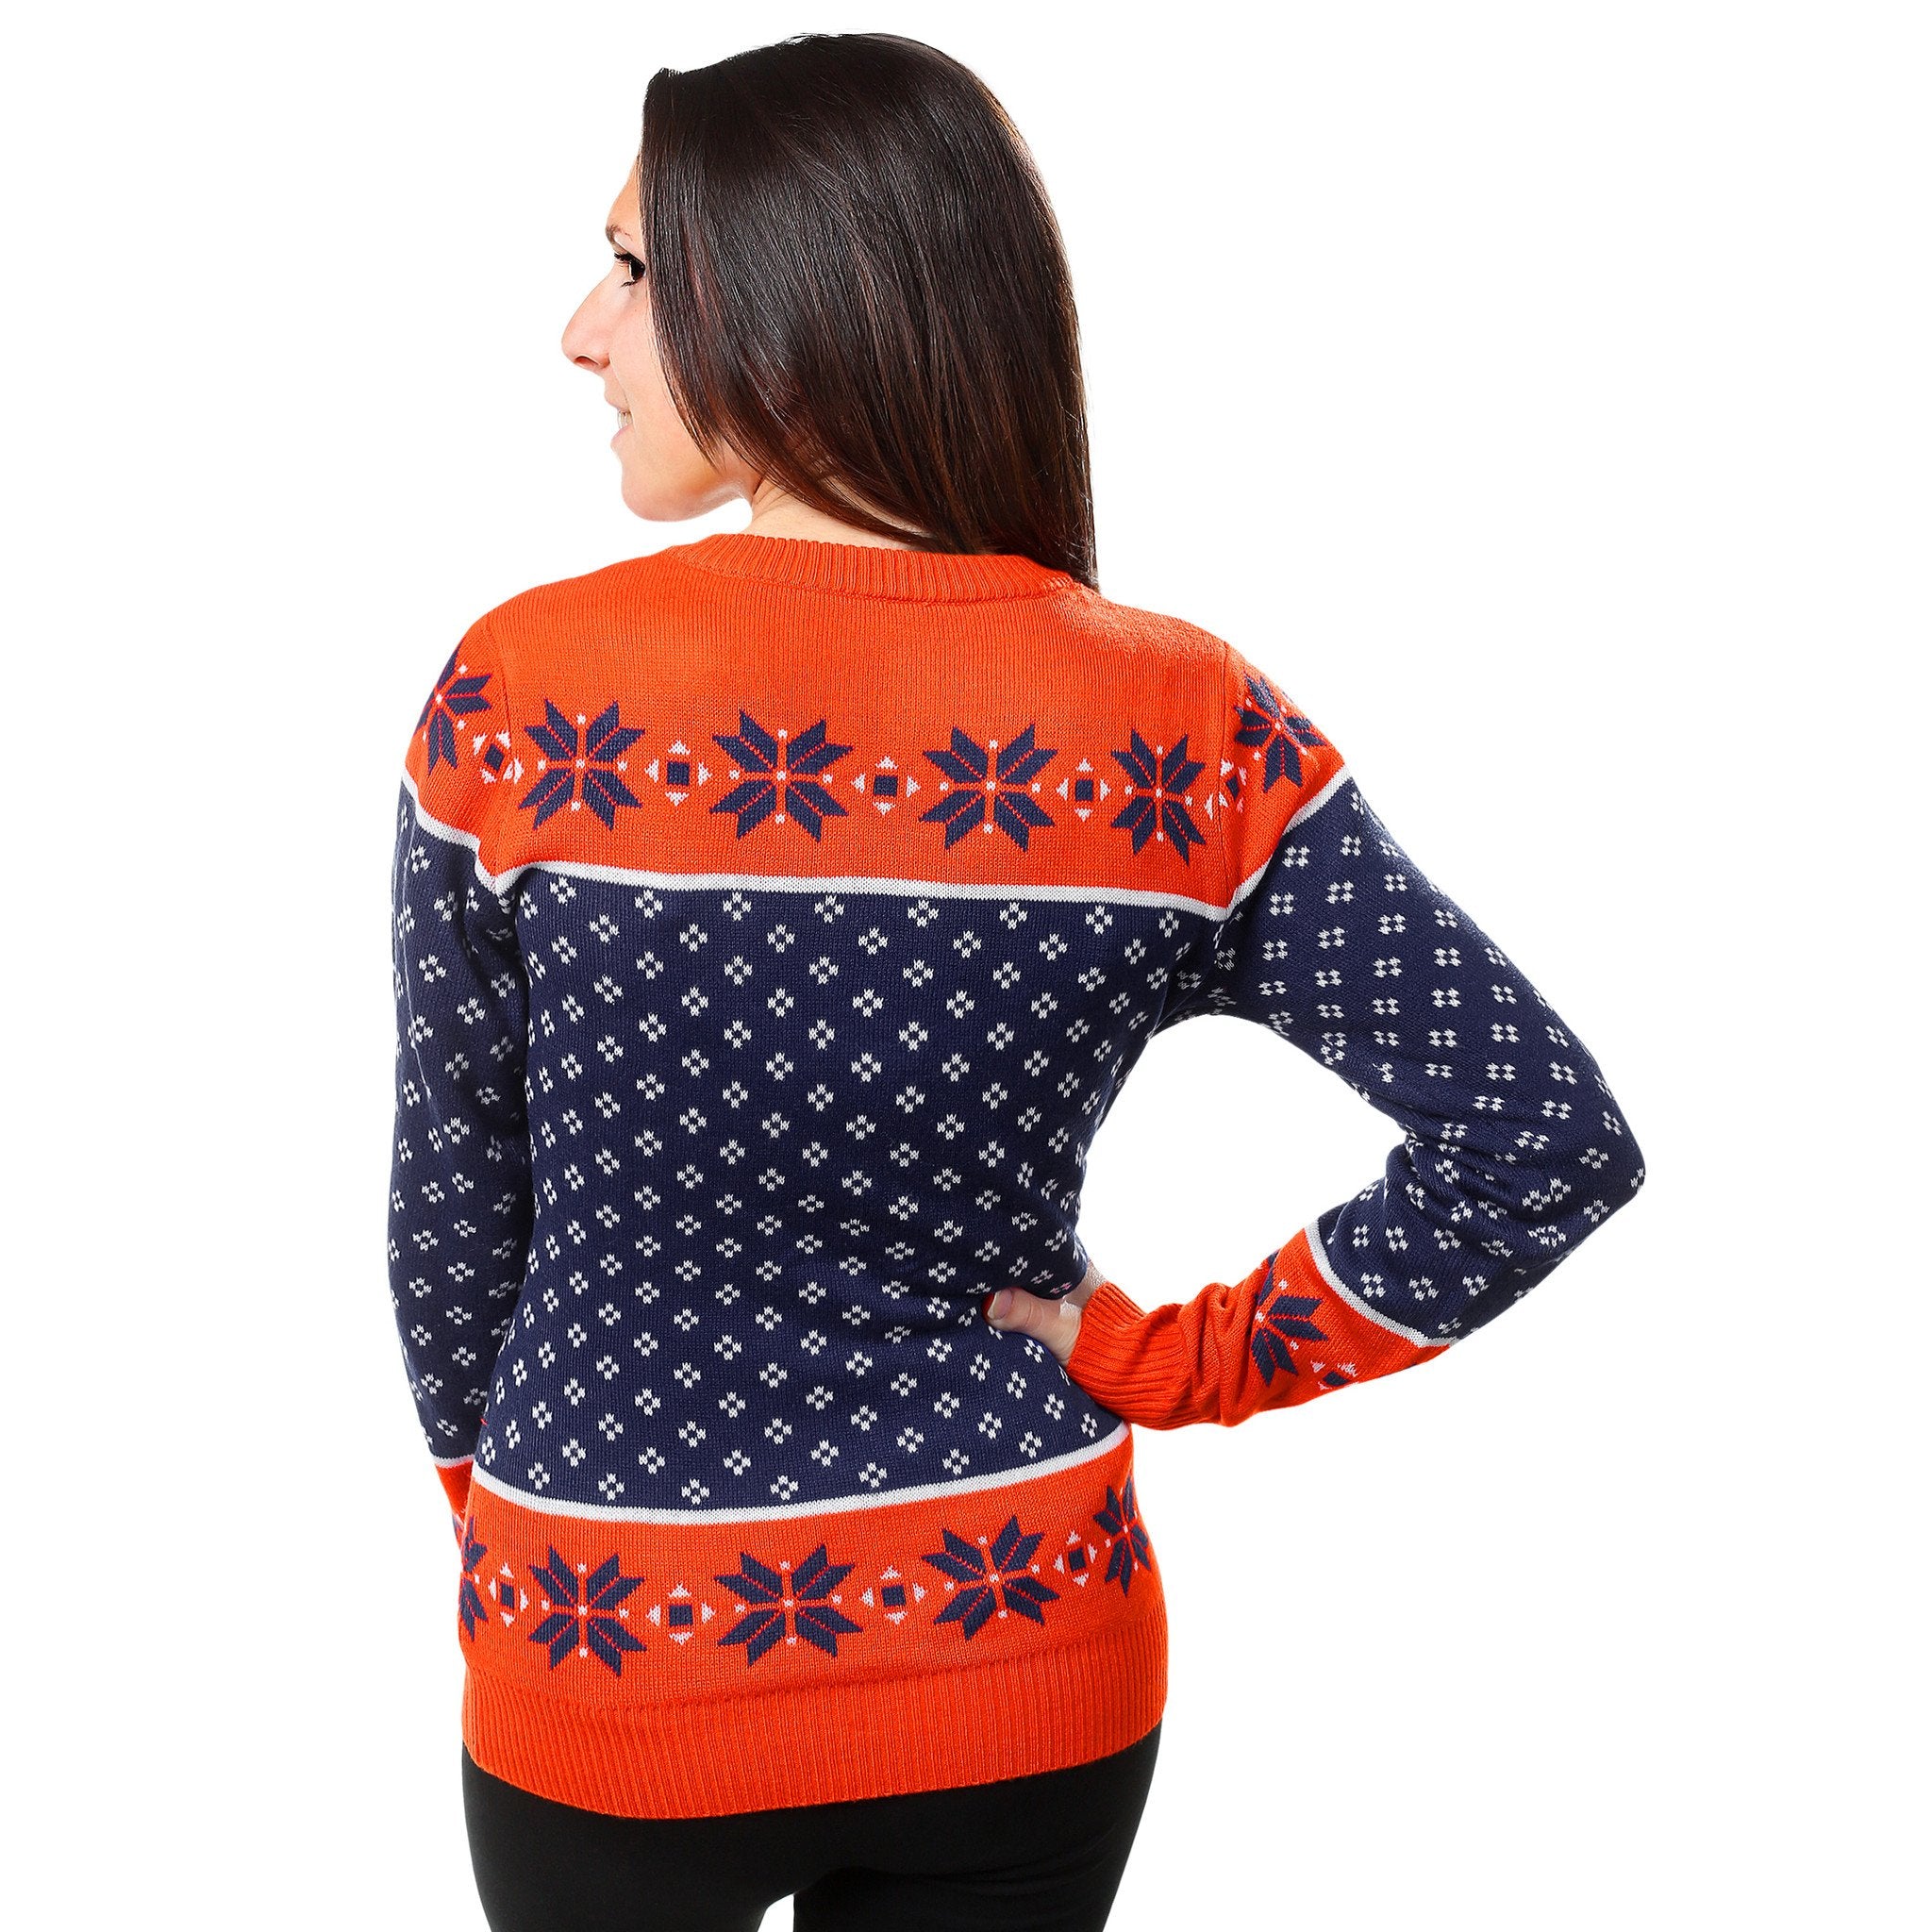 Denver Broncos Womens NFL Christmas Sweater